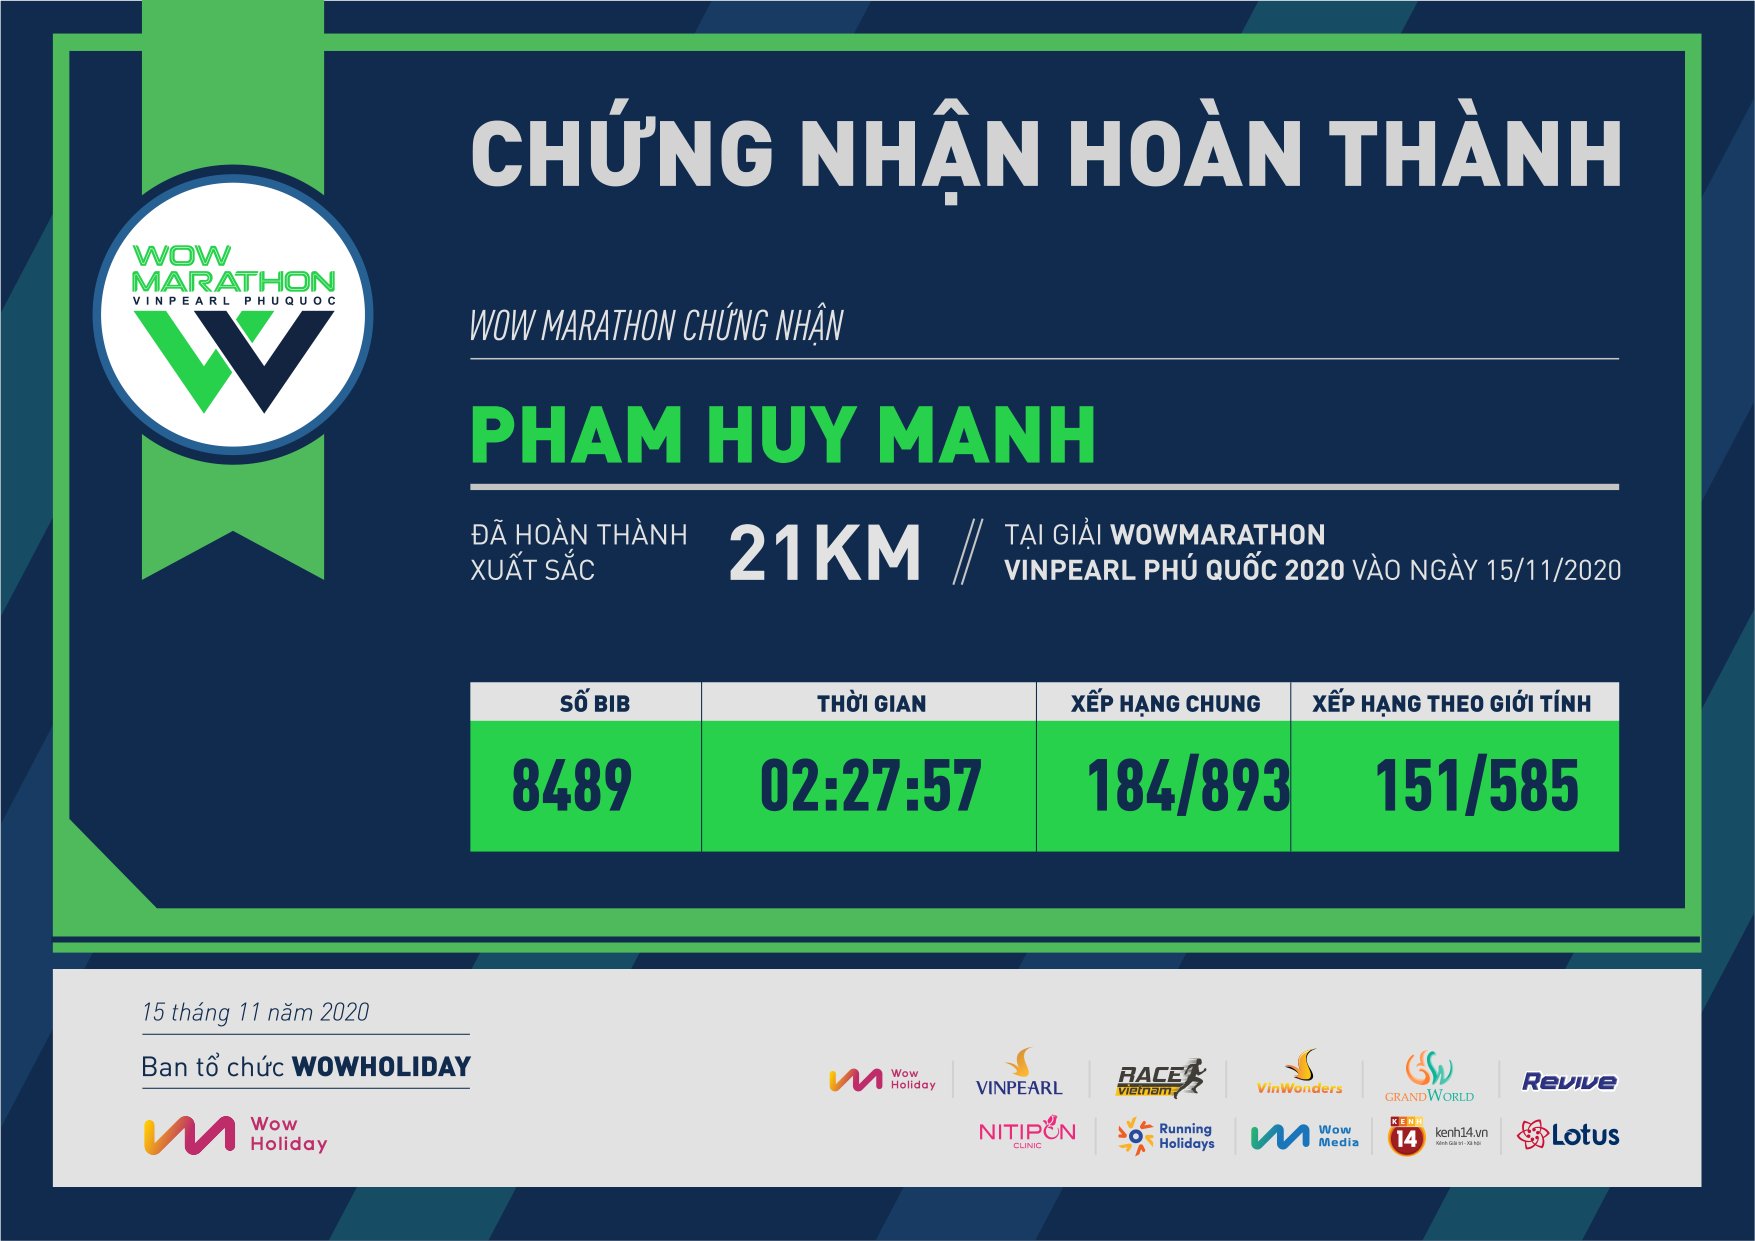 8489 - Pham Huy Manh